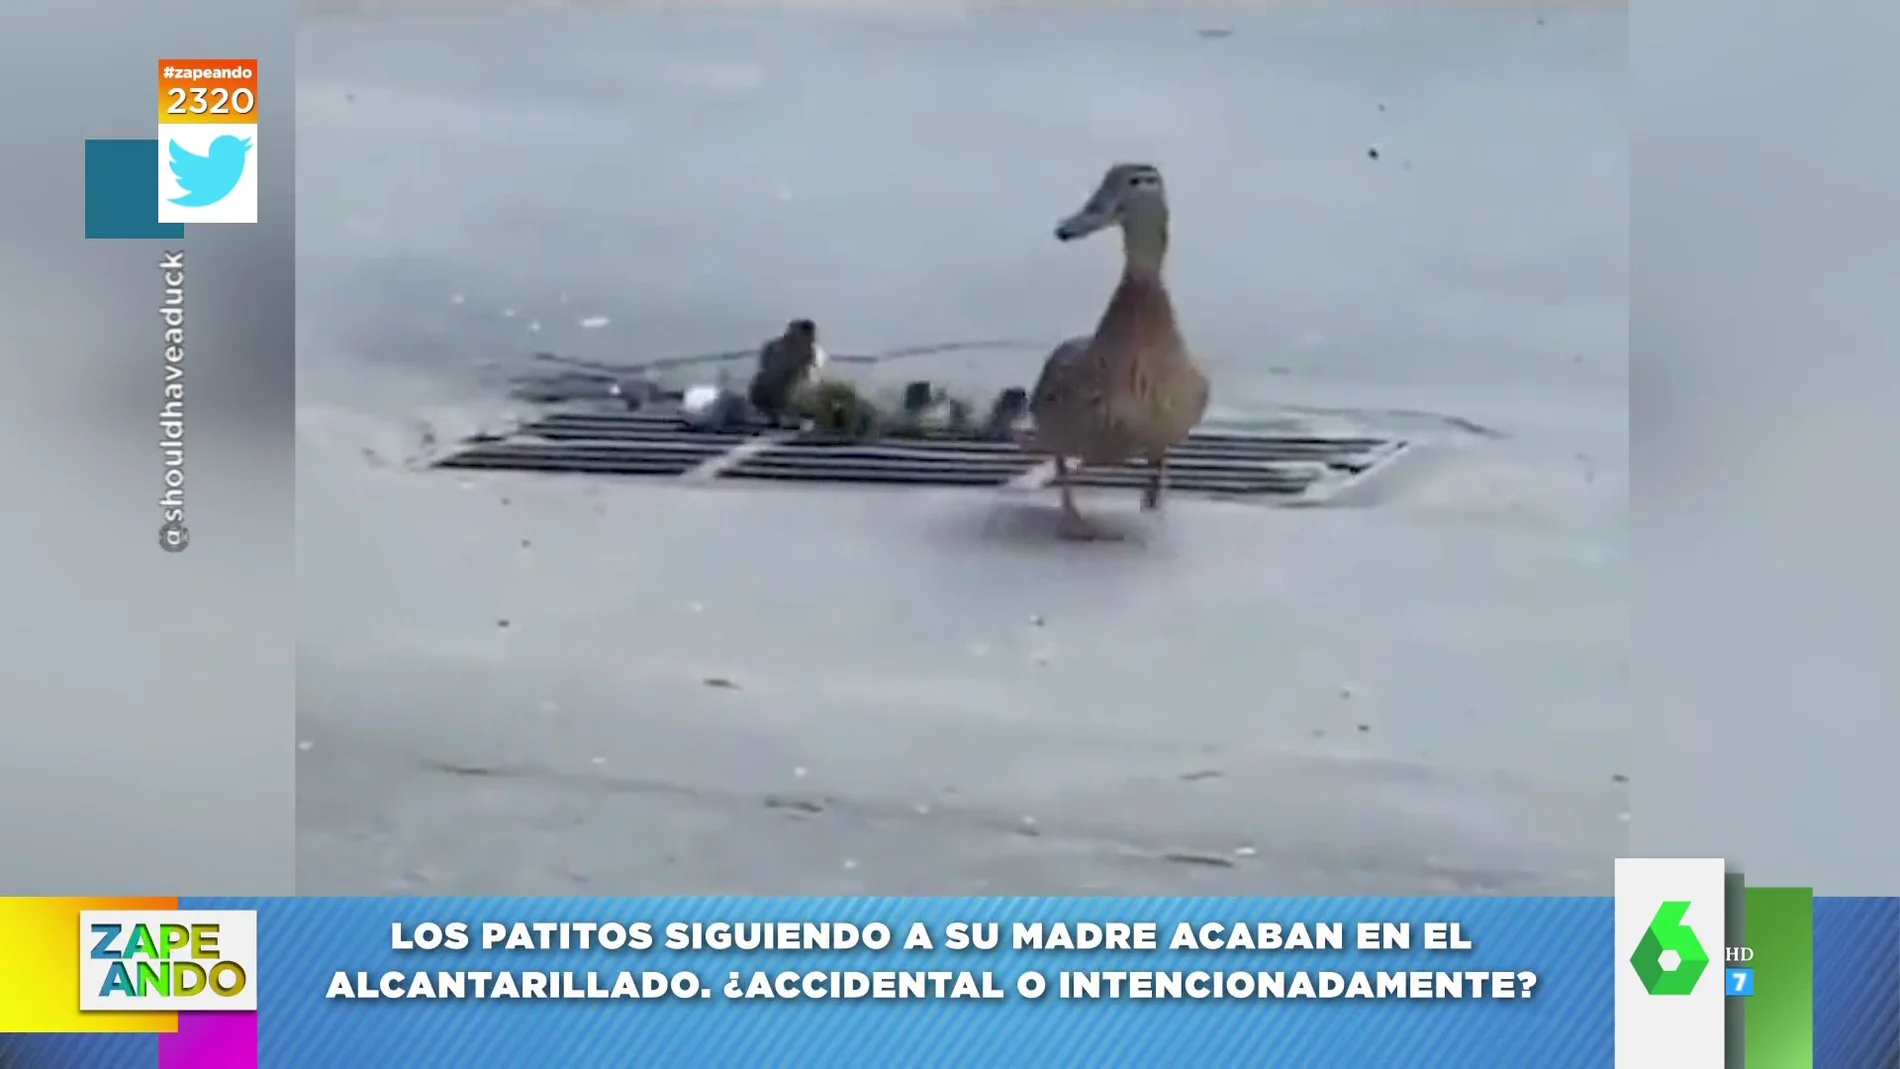 El vídeo de estos patitos que acaban cayendo a una alcantarilla casi hace llorar a Cristina Pedroche 